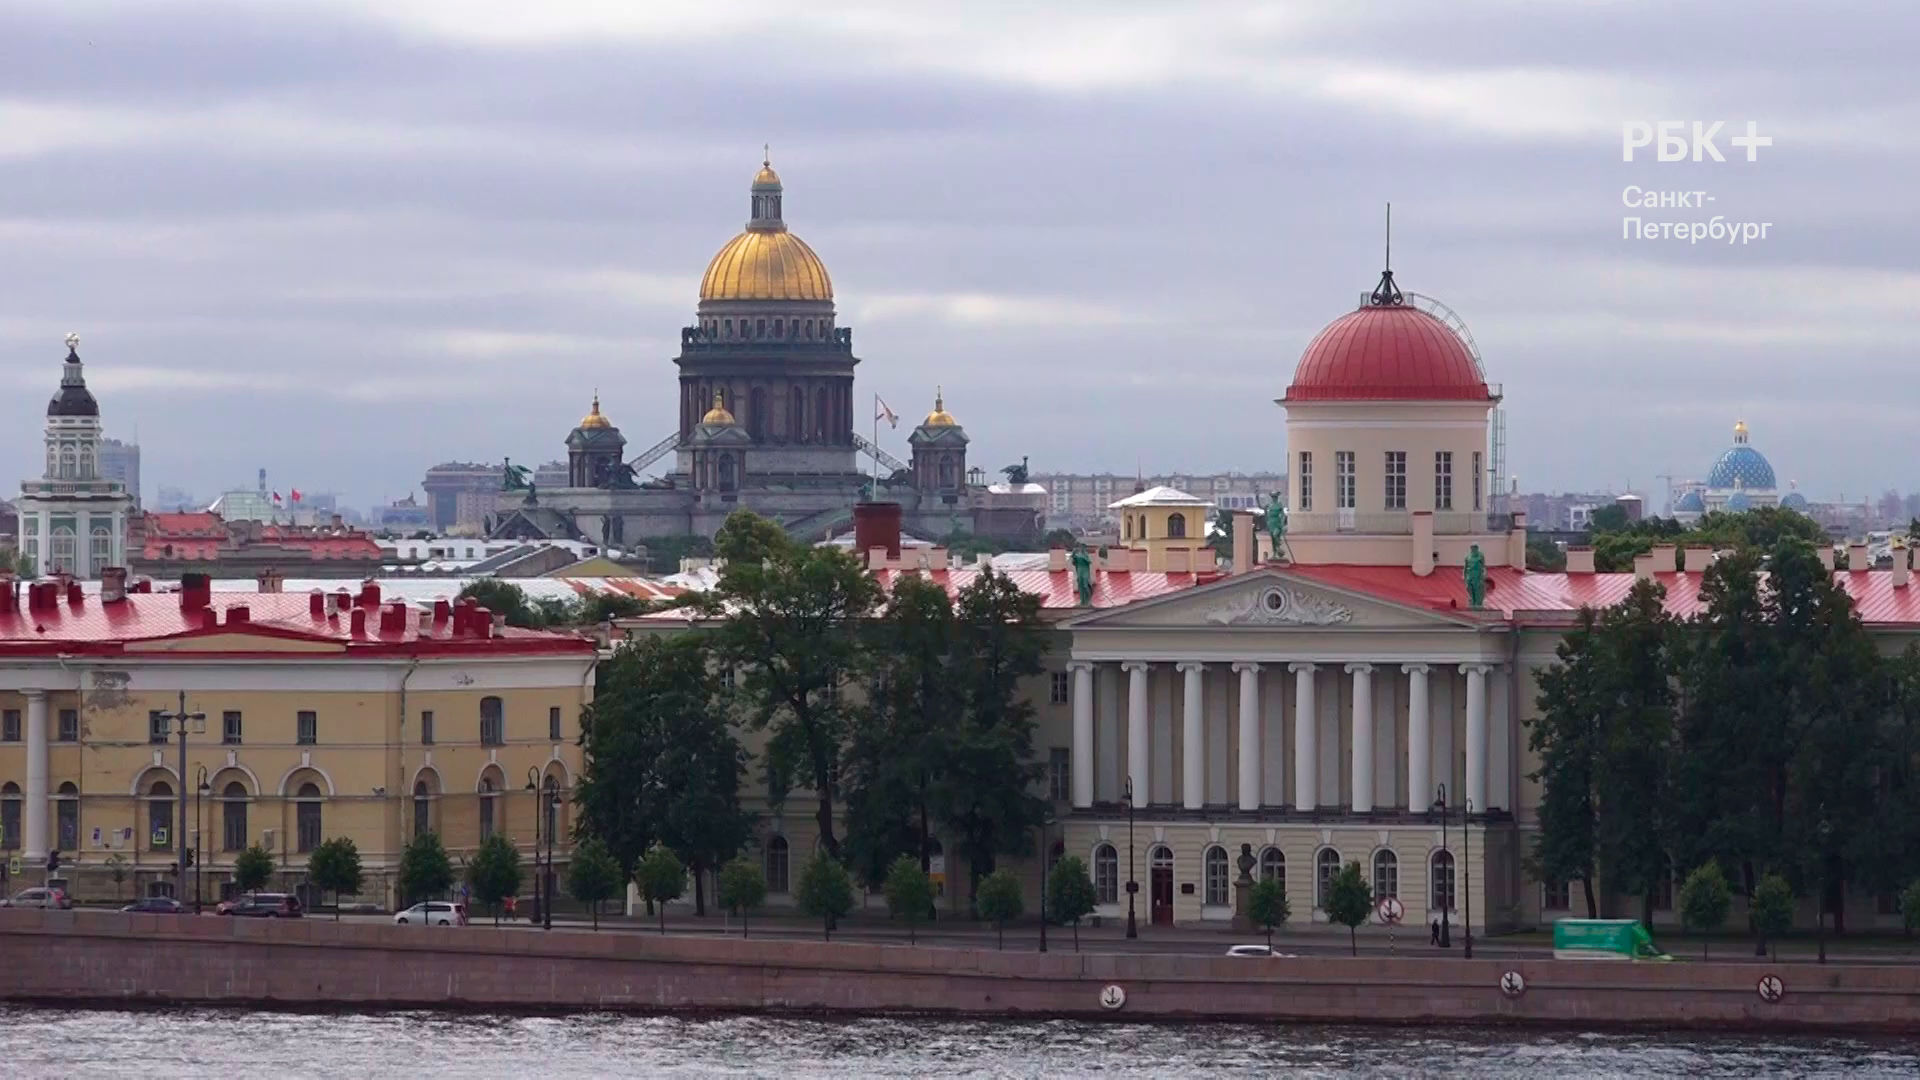 Бизнес-новость. Что дал Петербургу переезд Газпрома?